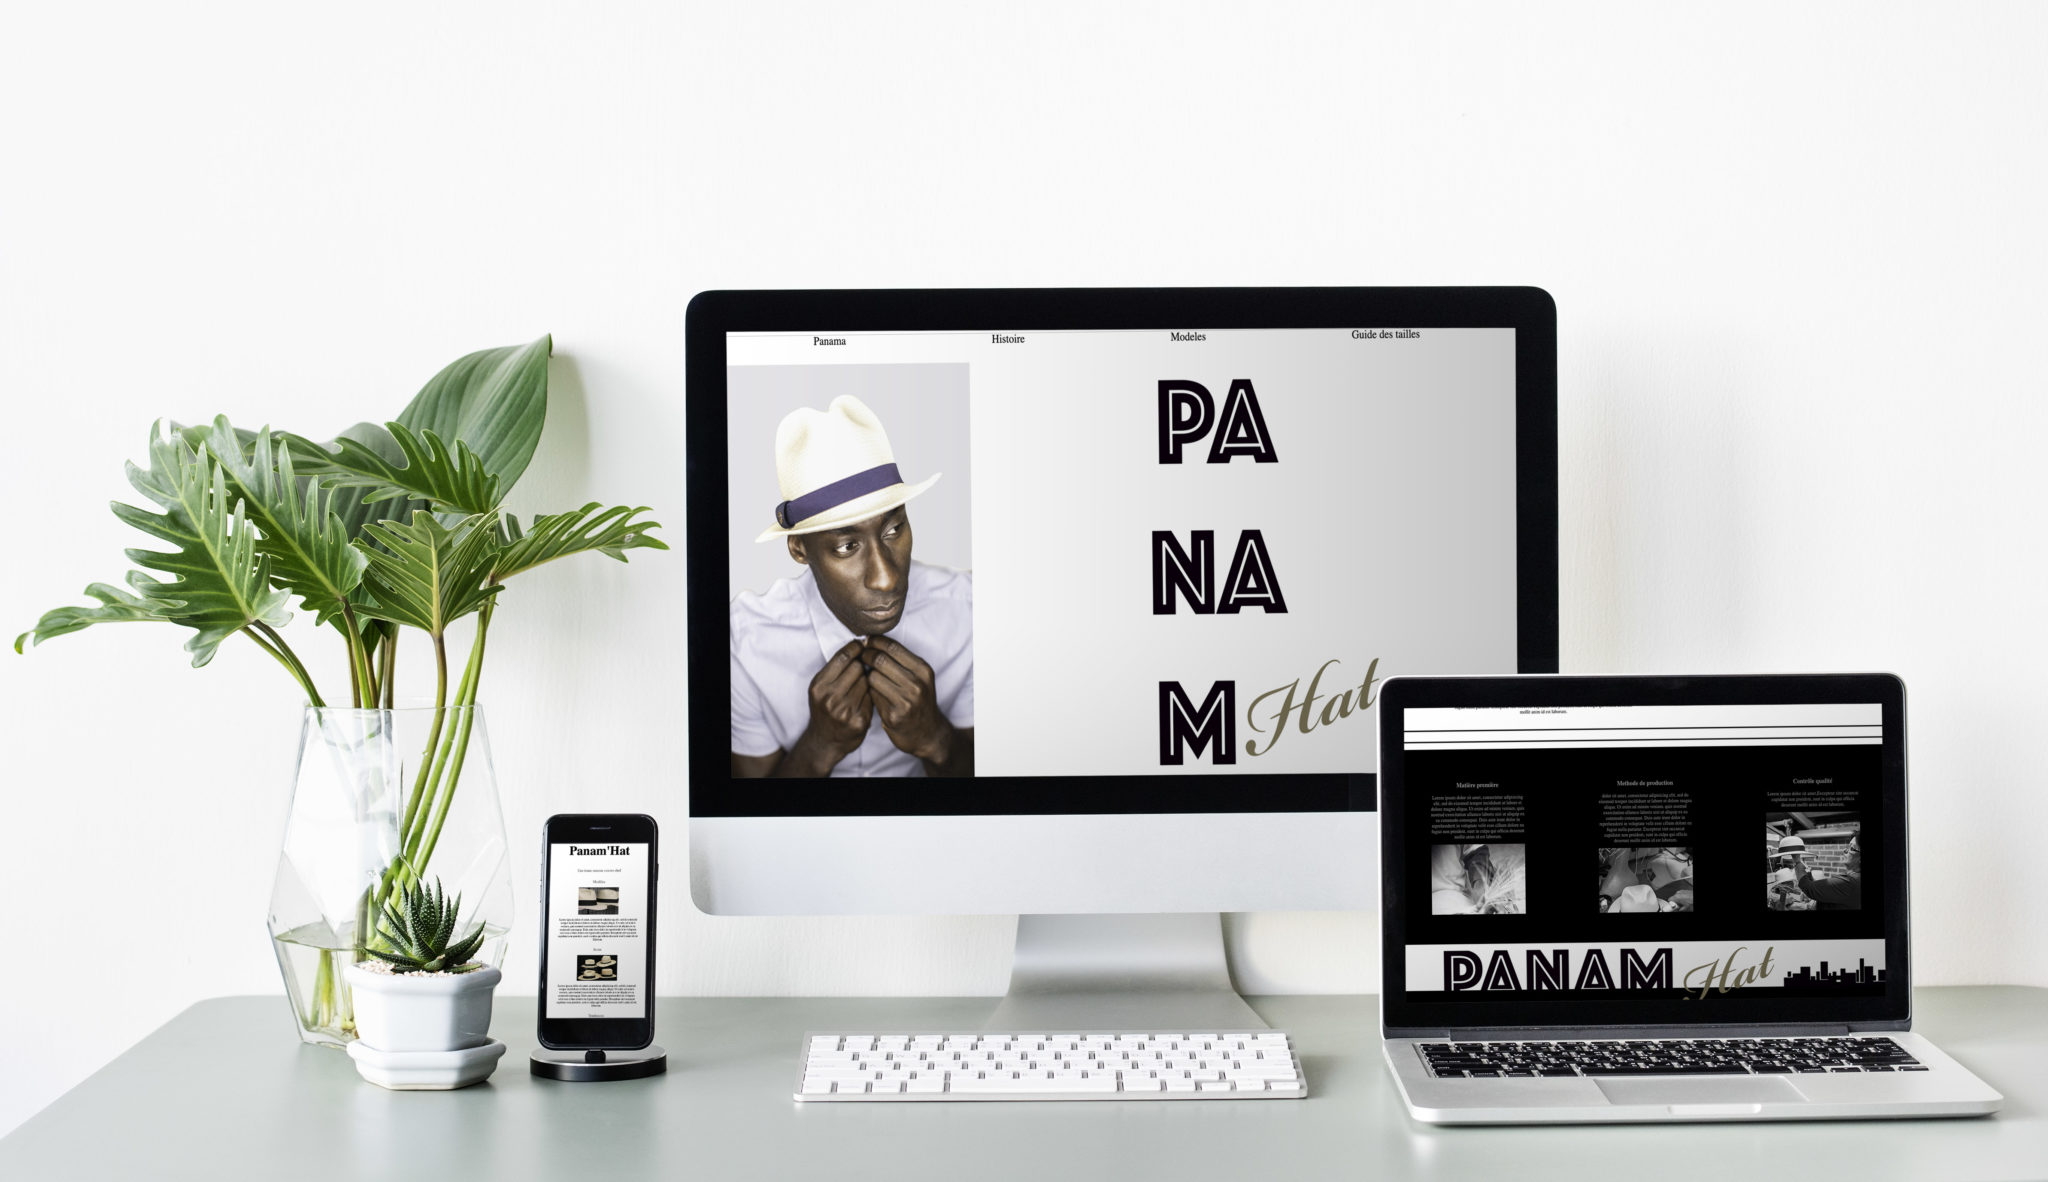 Site en html/css sur les chapeaux panama en cours de création